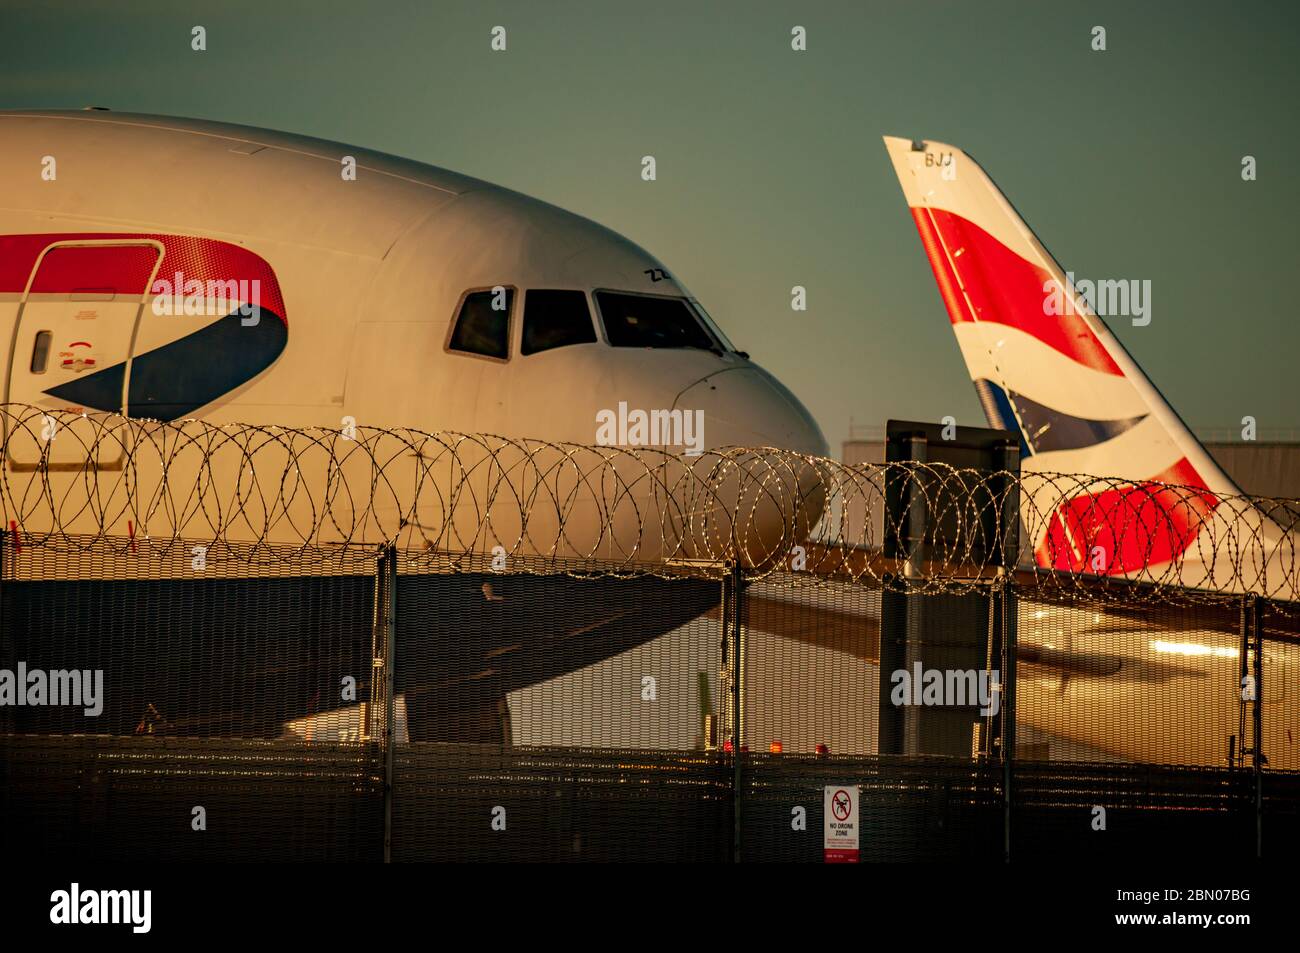 Die Nase eines Flugzeugs von British Airways neben dem Schwanz eines anderen hinter einem Stacheldrahtzaun und ohne Drohnenschild bei Sonnenuntergang. Stockfoto